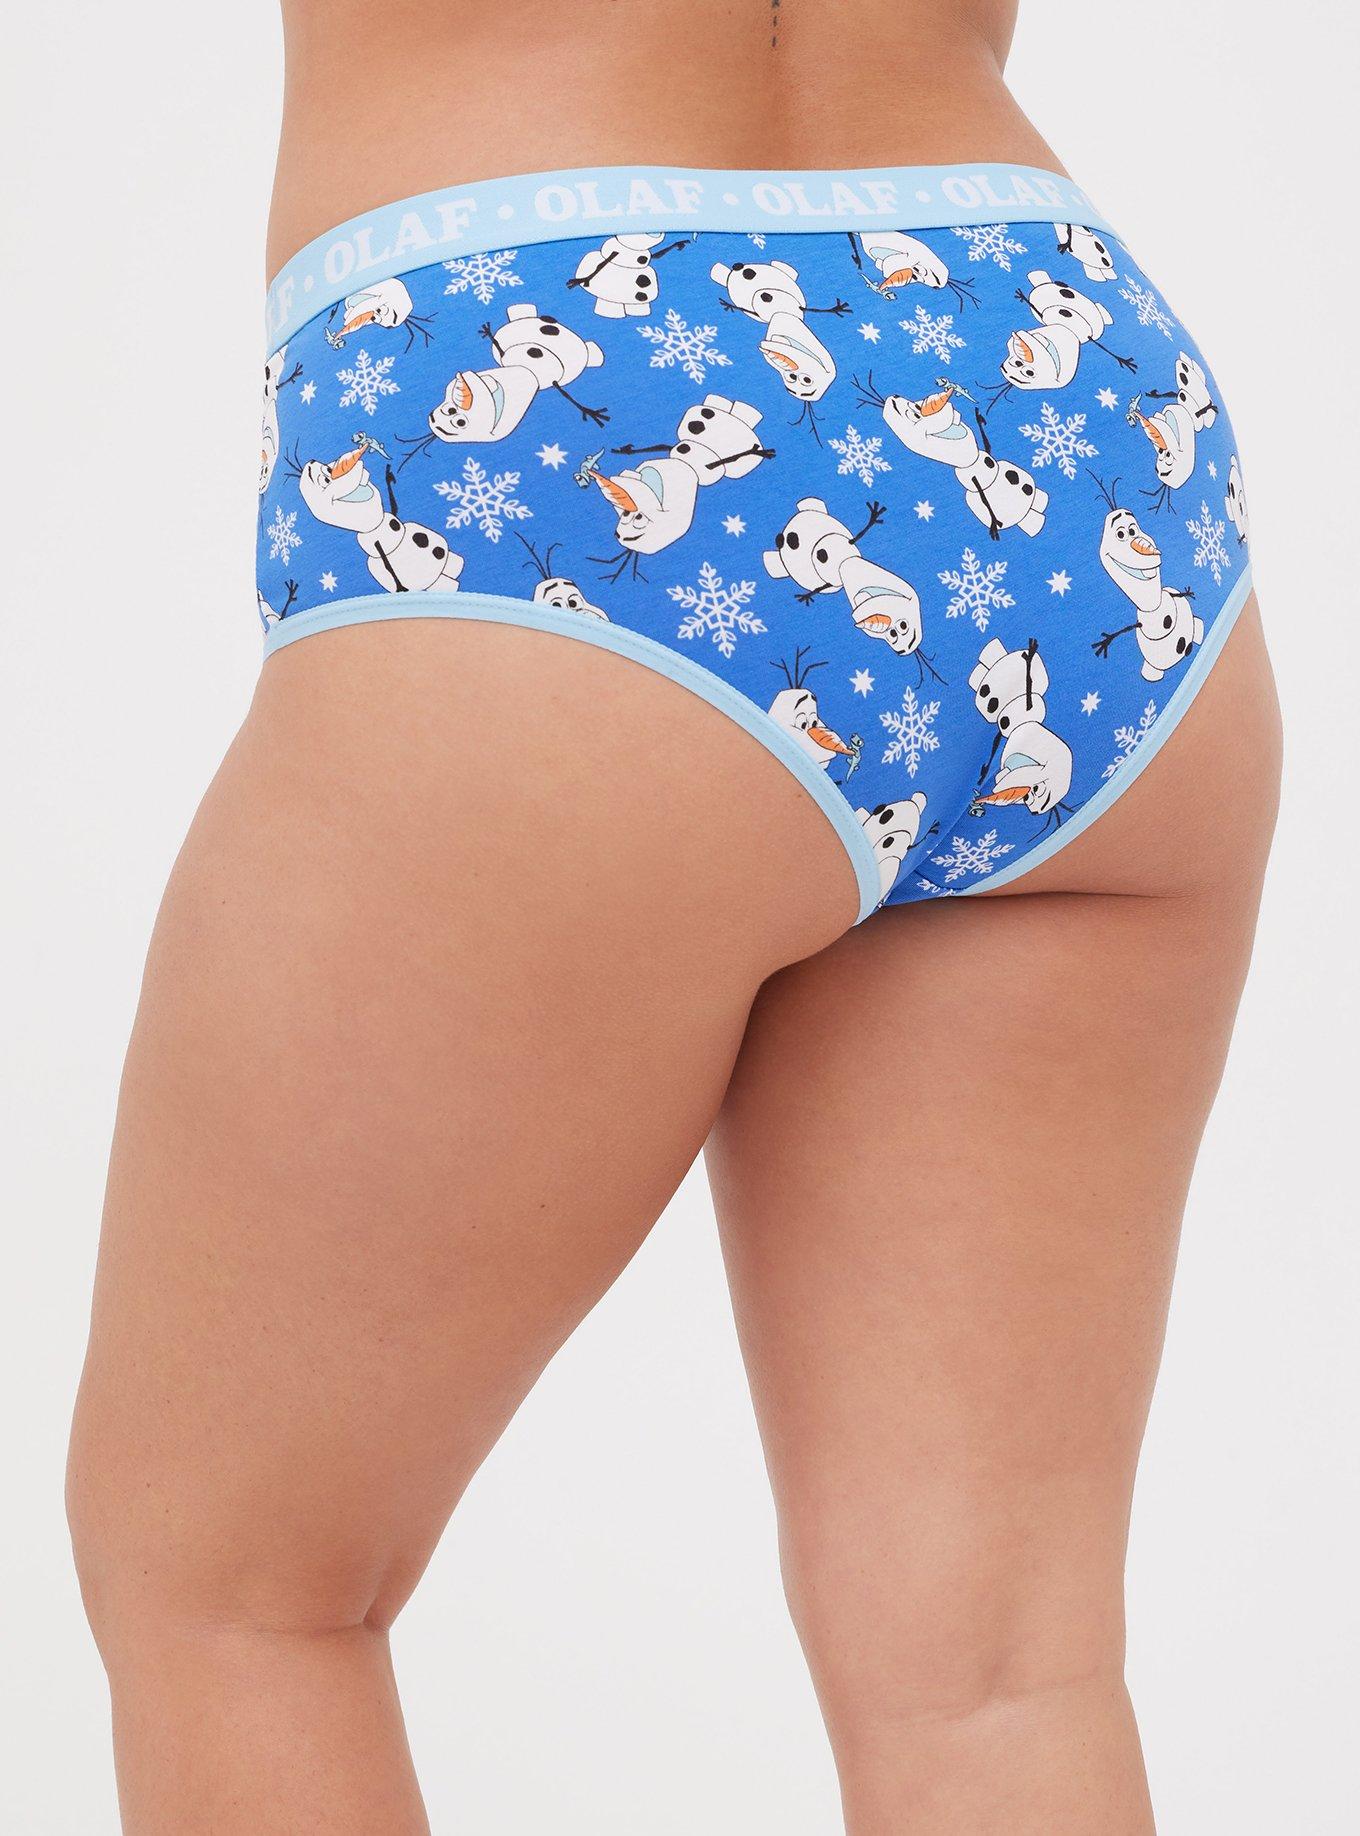 Torrid Cheeky Panties Underwear Disney Marvel Deadpool Tacos Plus Size 2 18  / 20